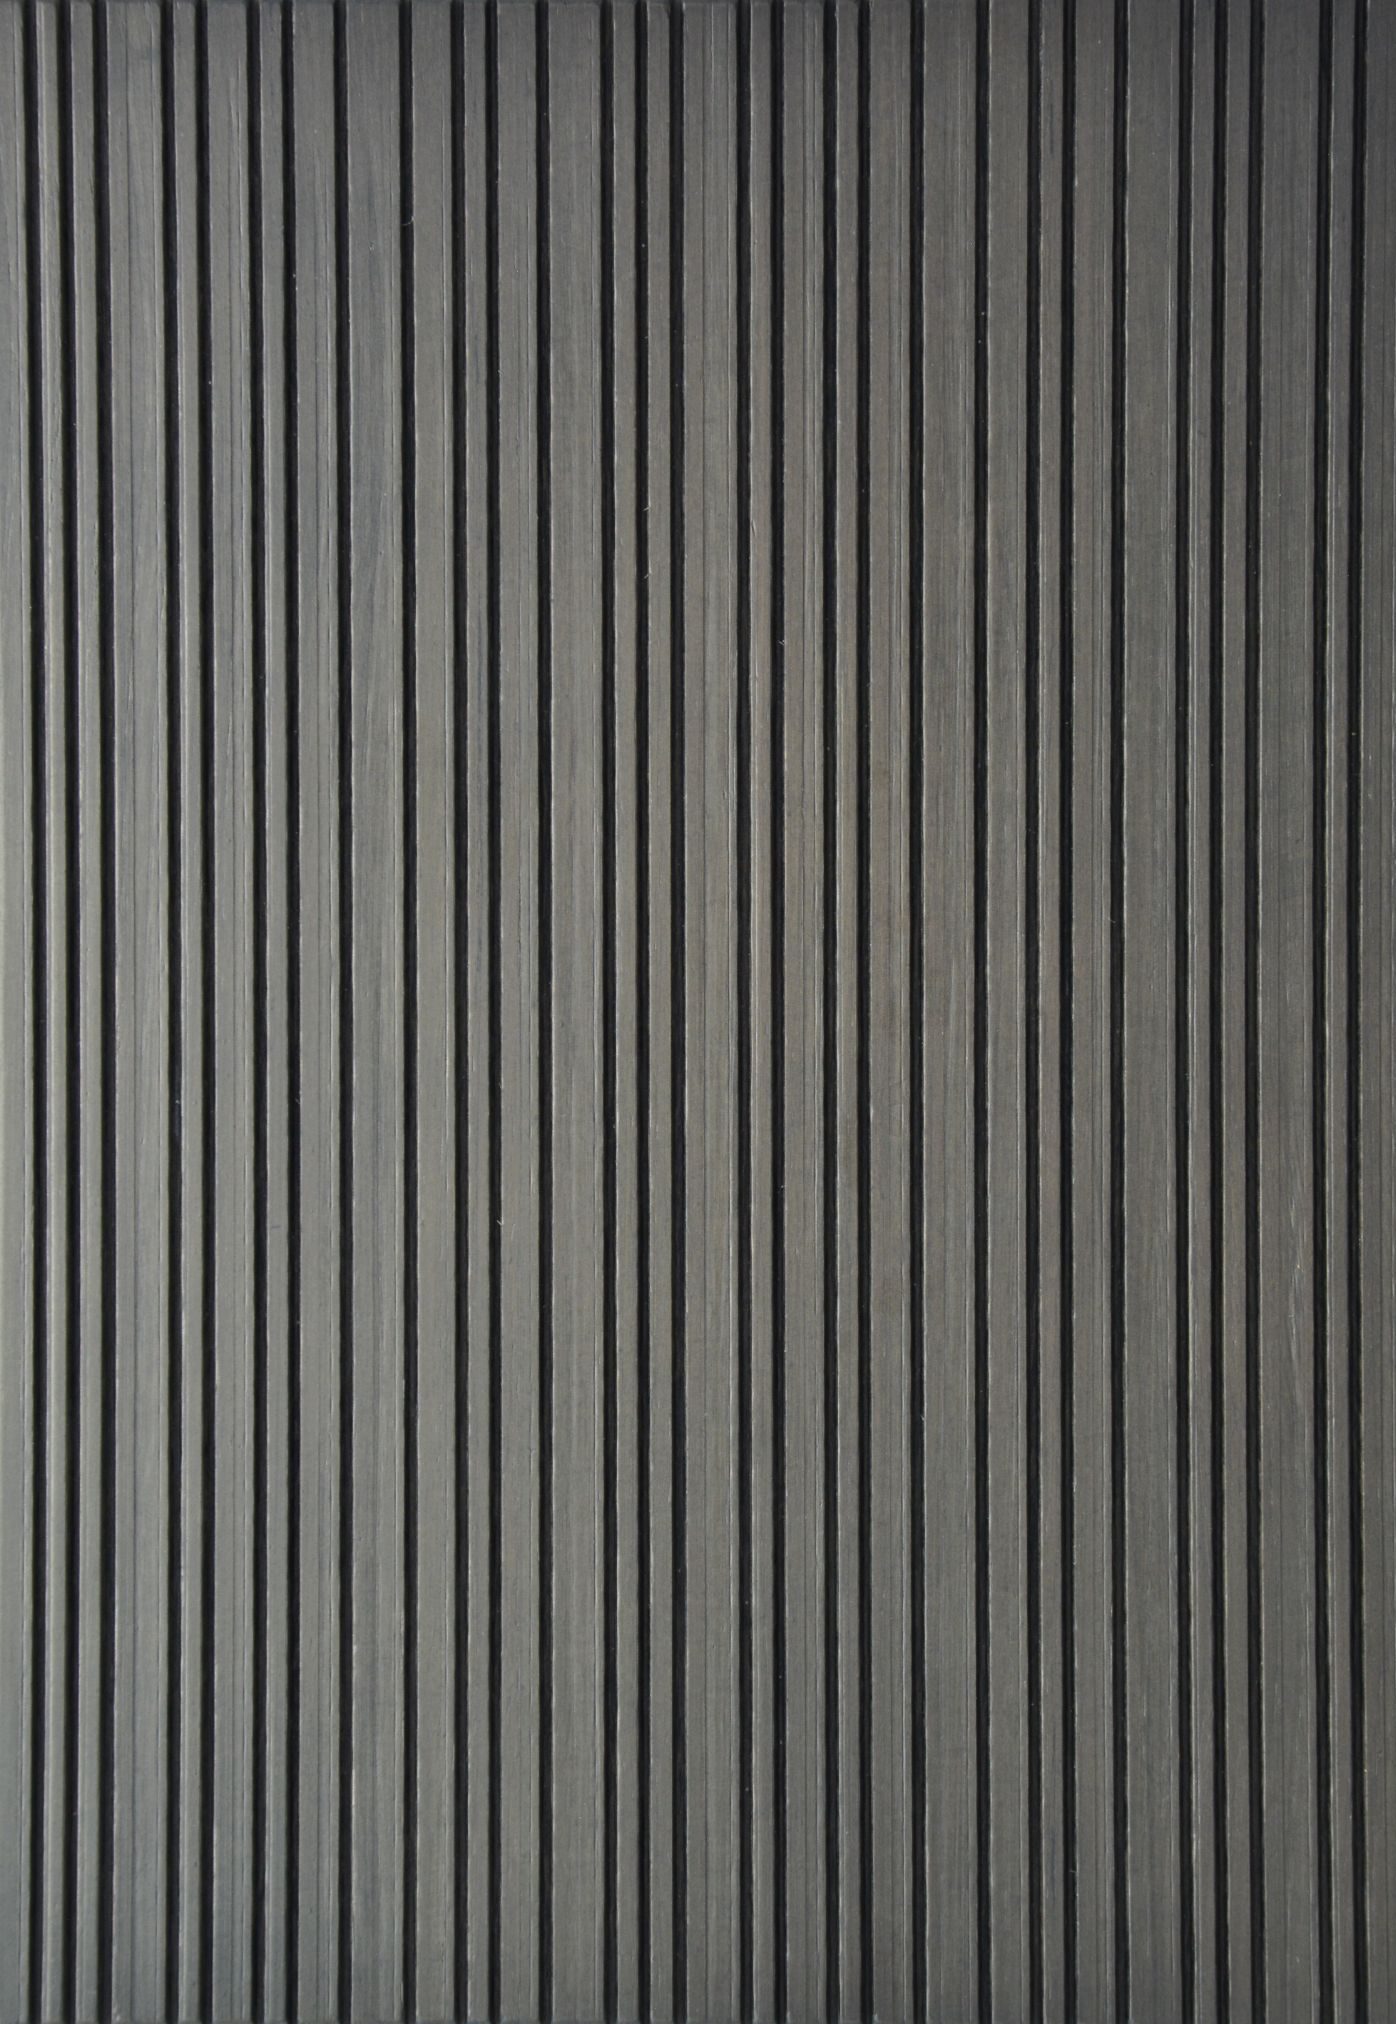 2670 - Lines - Chestnut Grey - Real wood veneer